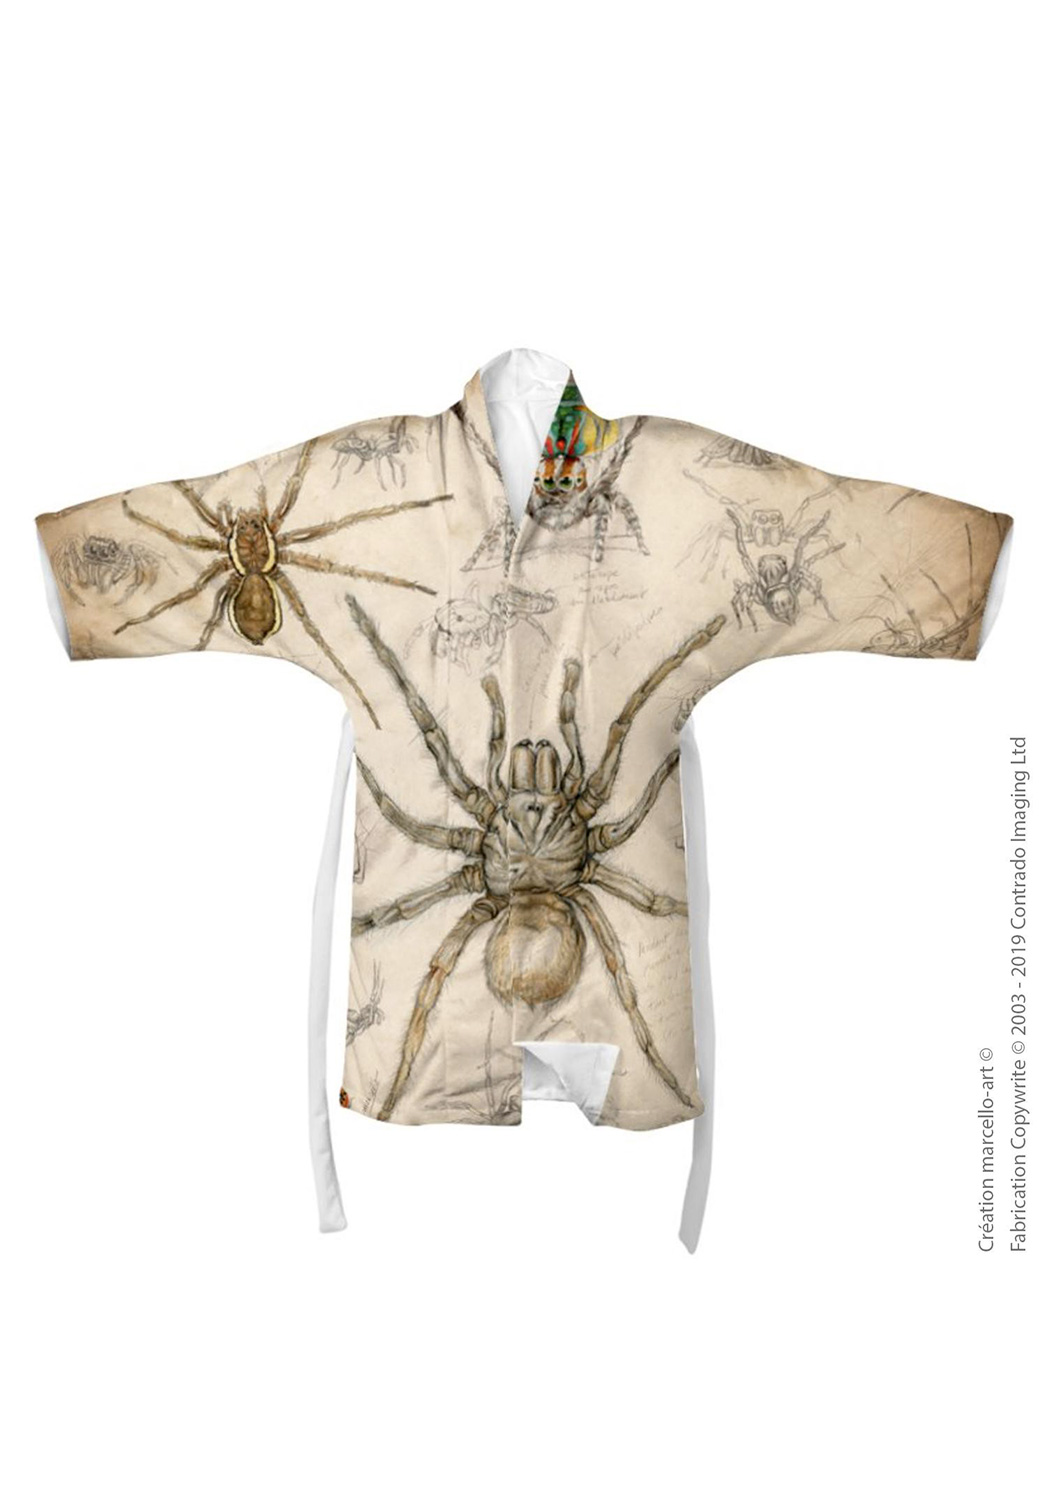 Marcello-art: Kimono Kimono 82 Arachna